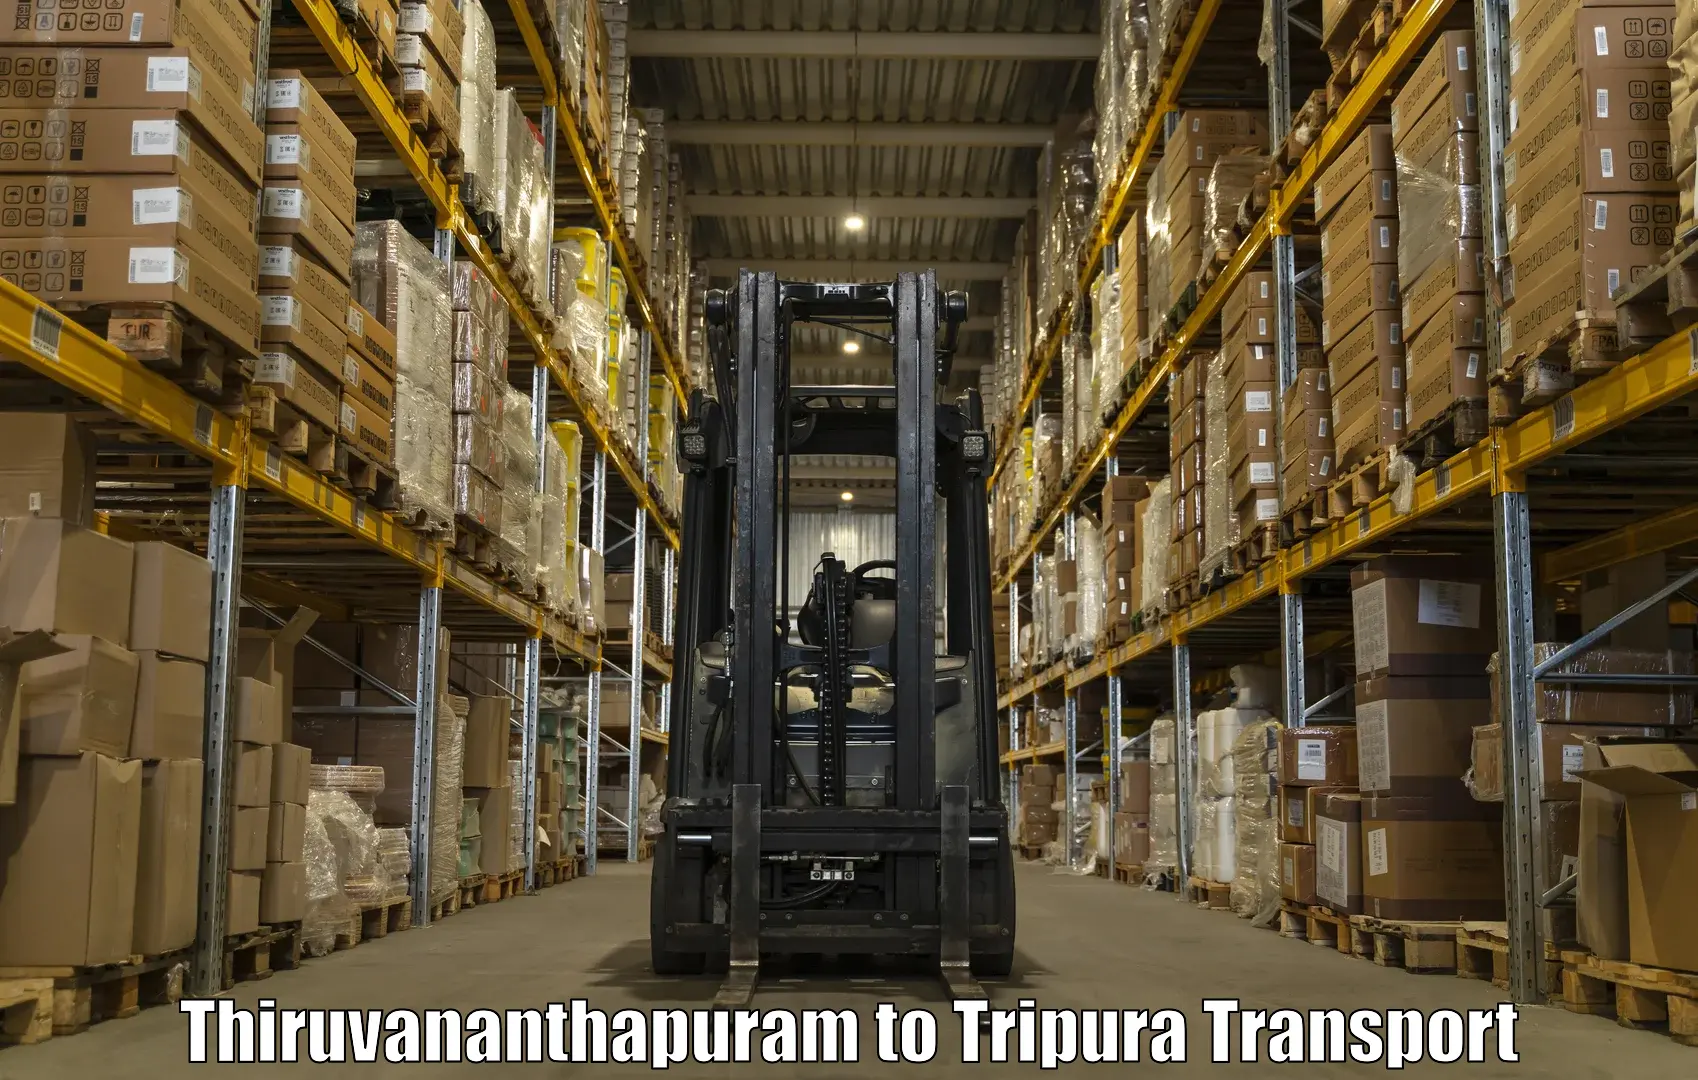 Sending bike to another city Thiruvananthapuram to Tripura